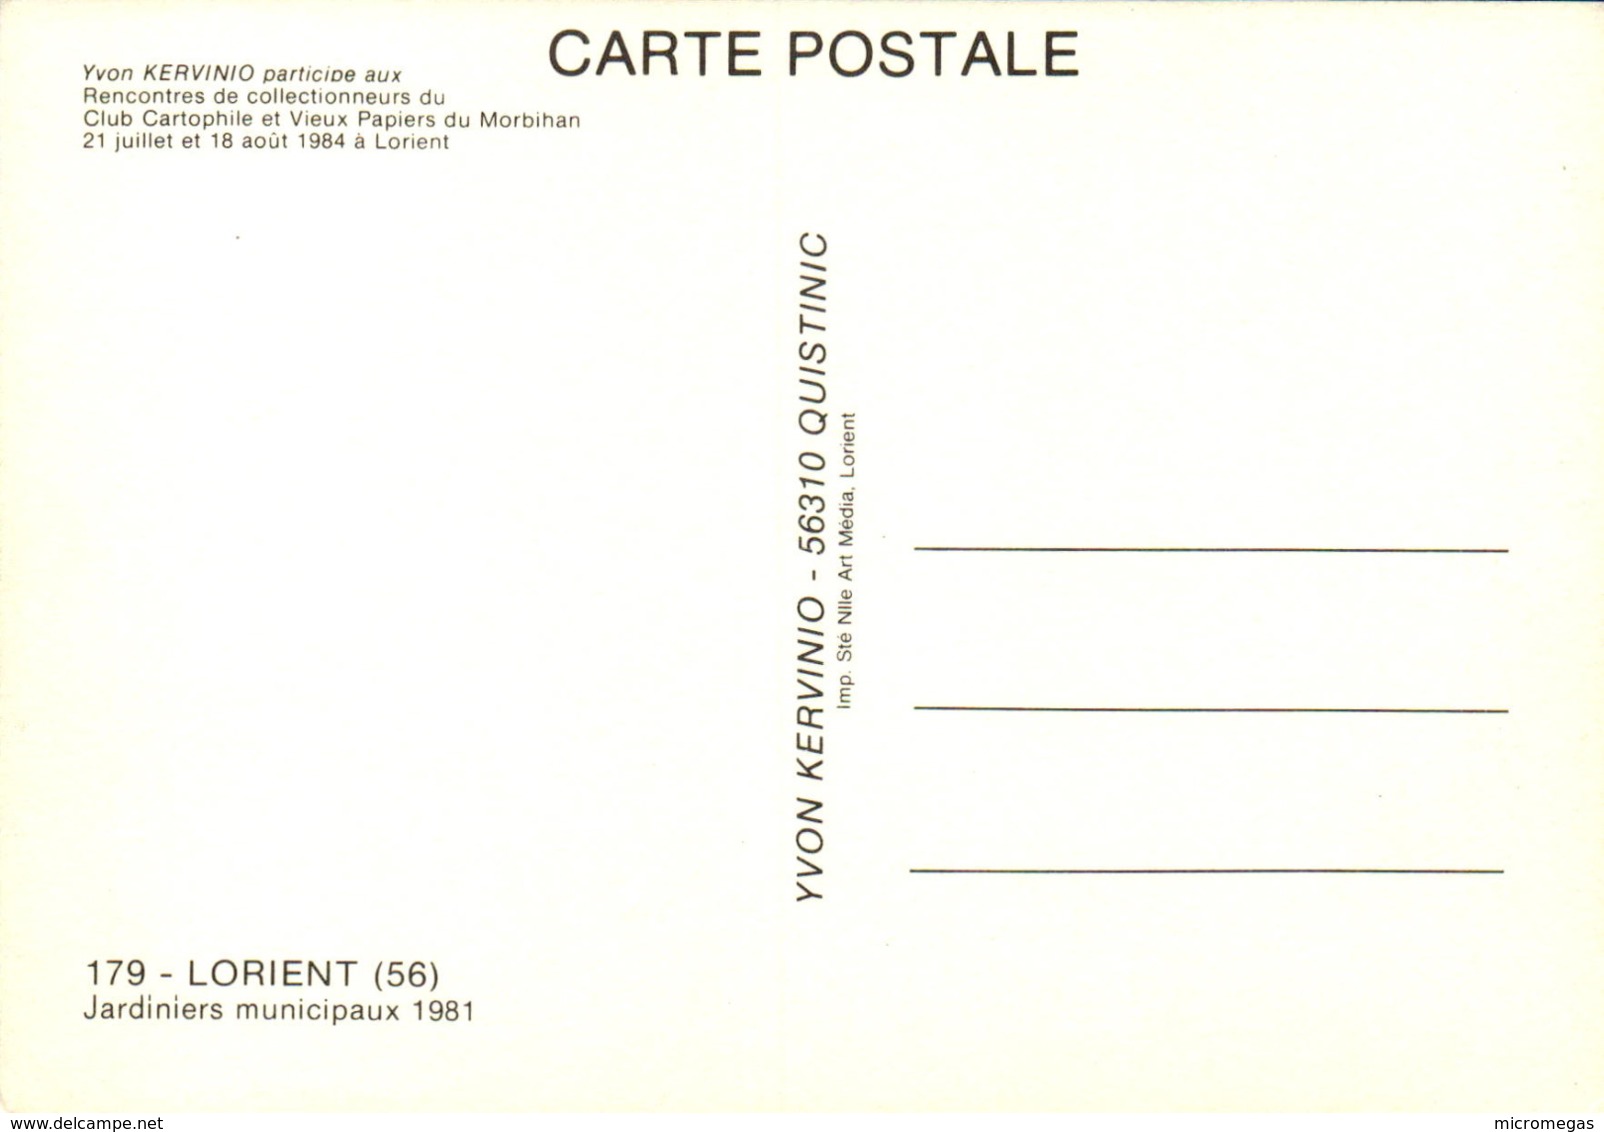 CCVPM - Rencontres De Collectionneurs Lorient 1984 - LORIENT - Jardiniers Municipaux 1981 - Bourses & Salons De Collections